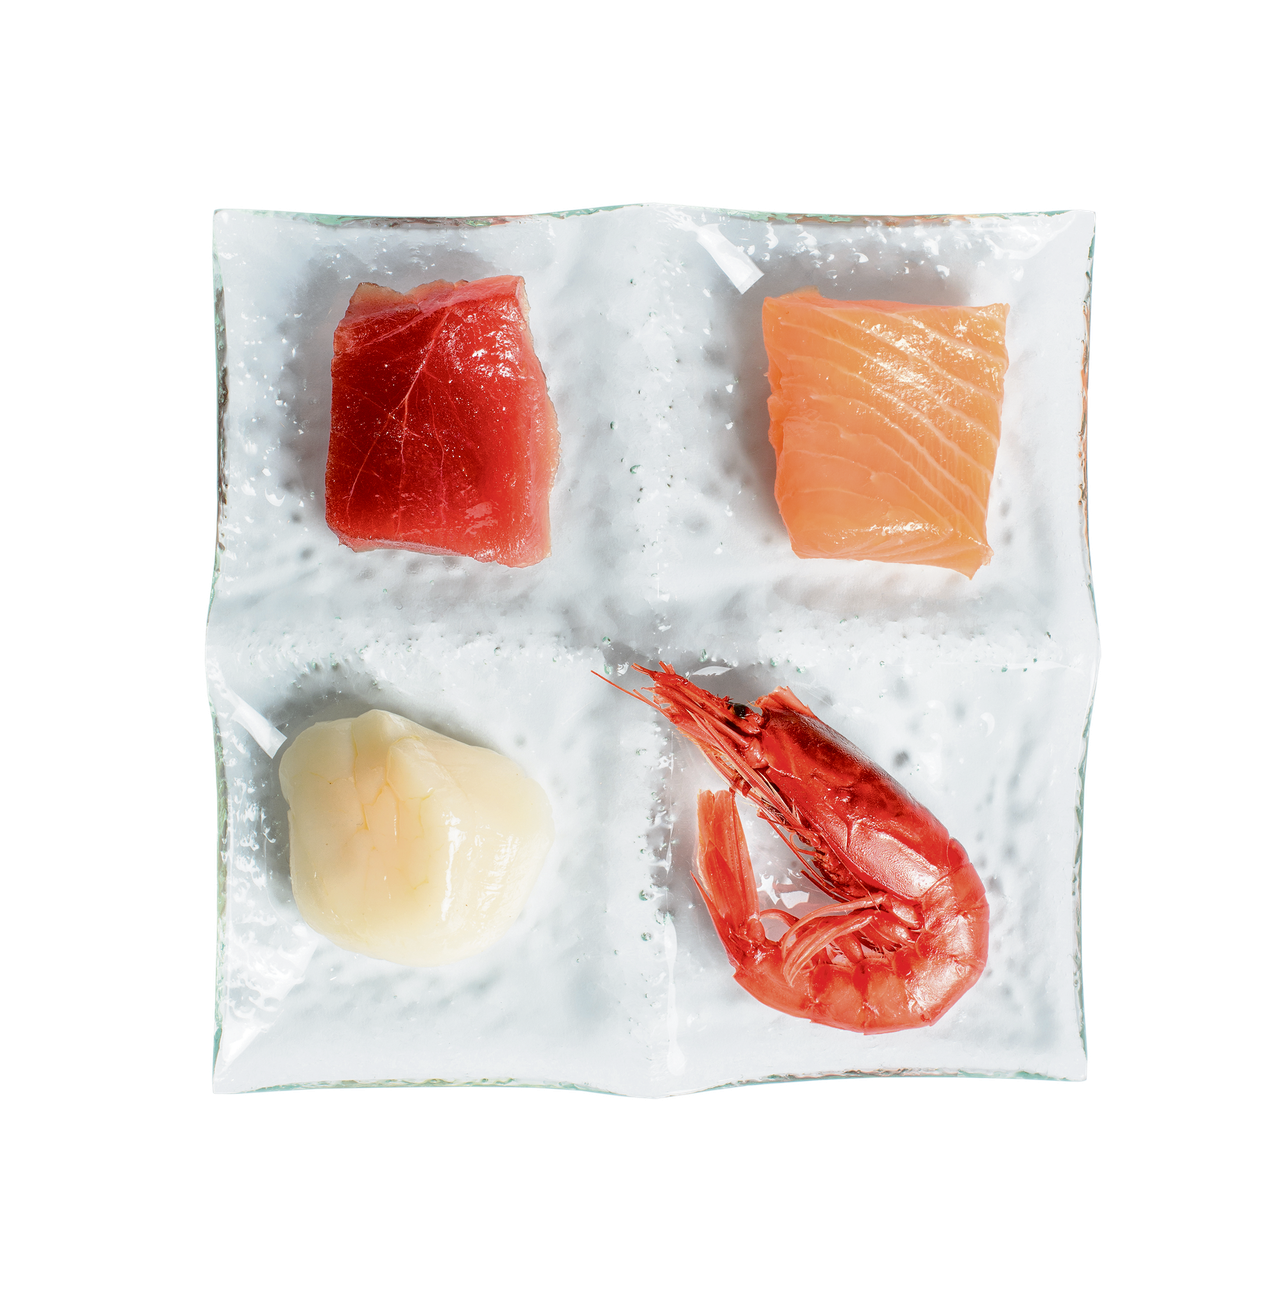 Restaurants met ‘duurzame vis’ serveren bedreigde paling en tonijn 